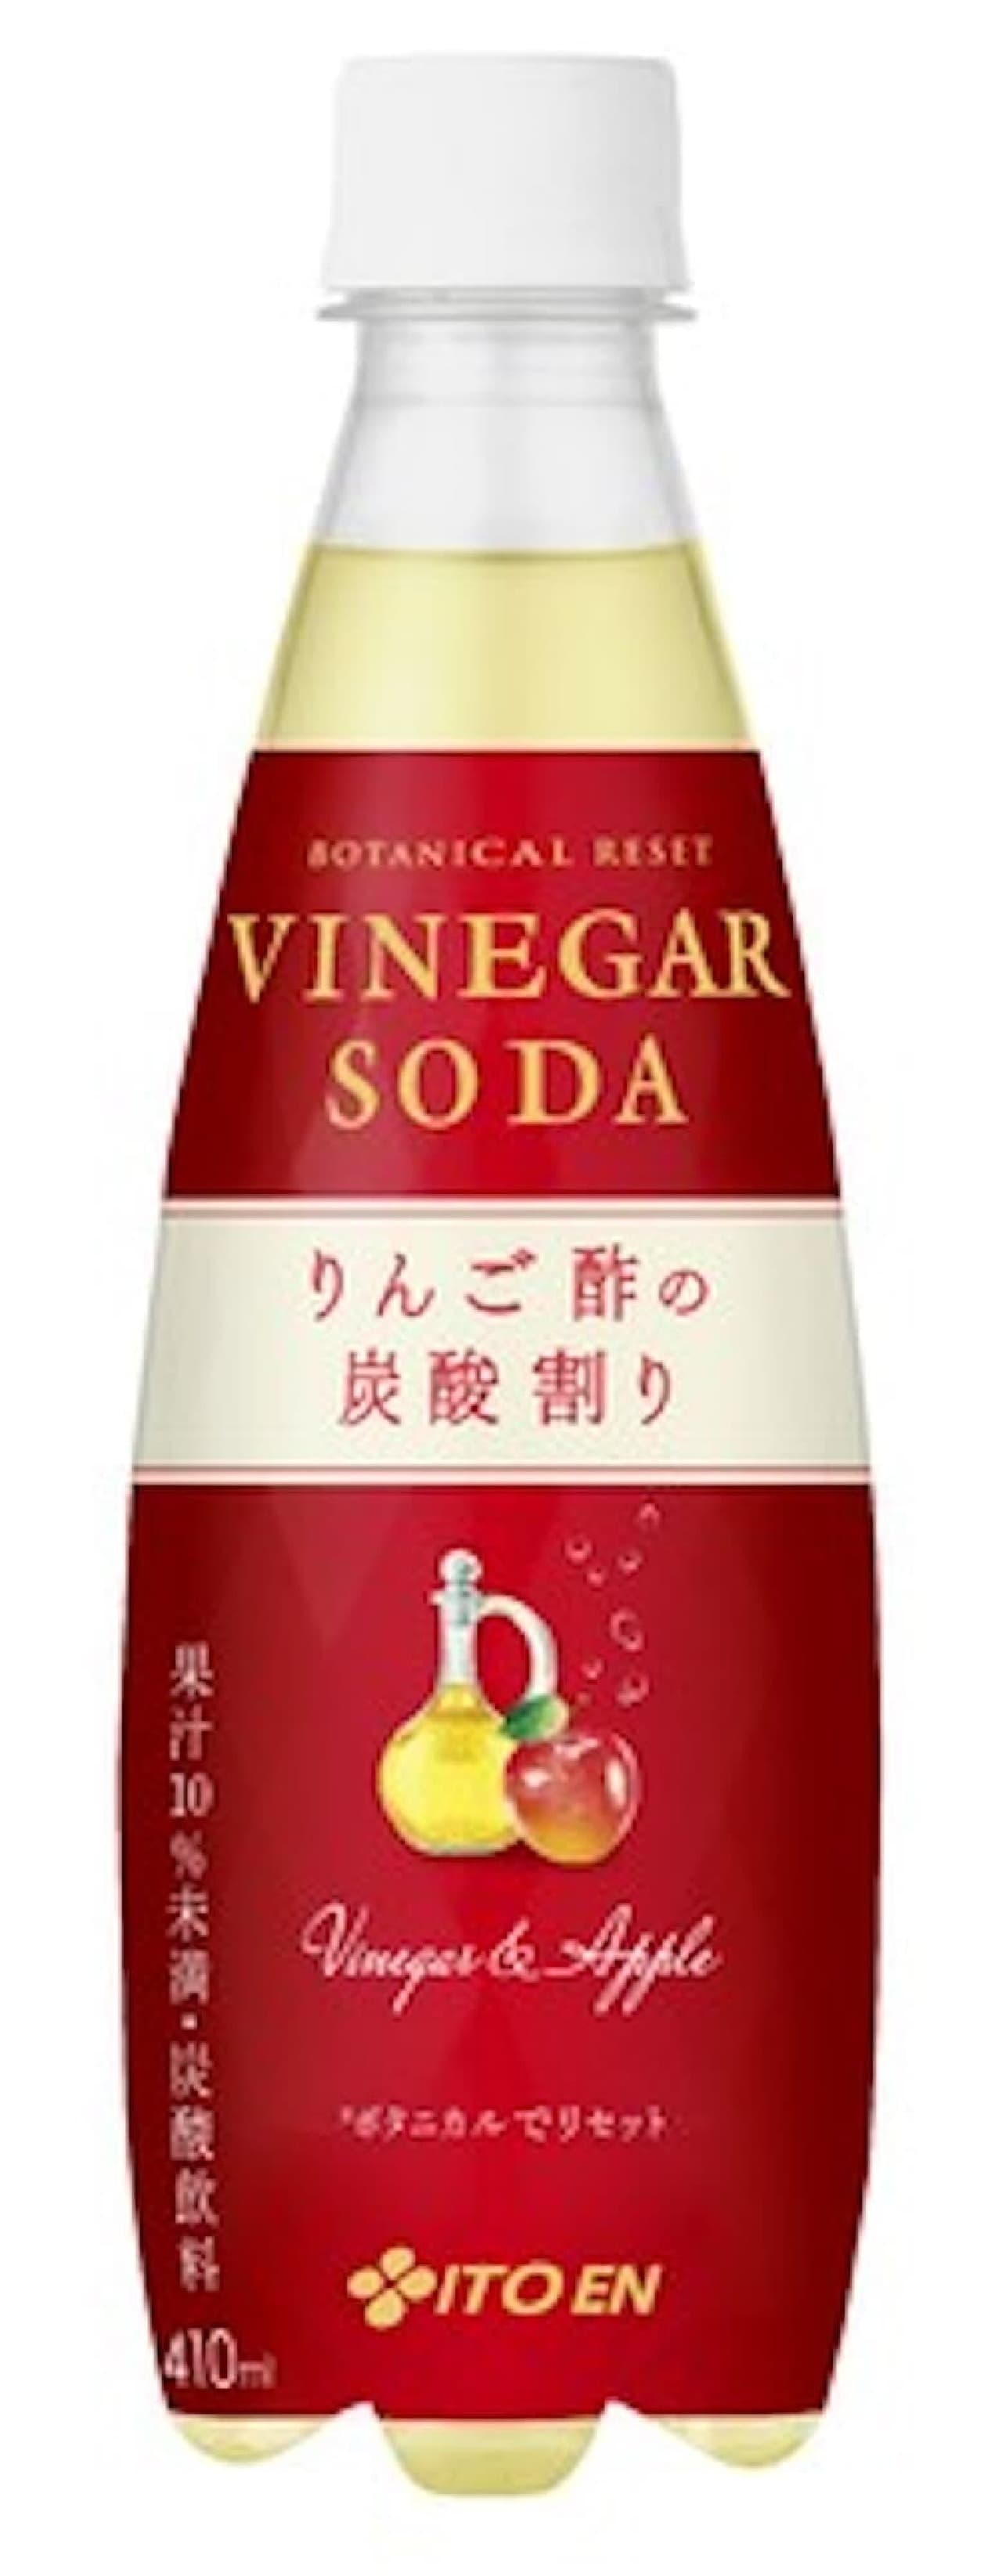 "VINEGAR SODA Carbonated apple cider vinegar" A refreshing soft drink made by dividing apple cider vinegar with carbonic acid